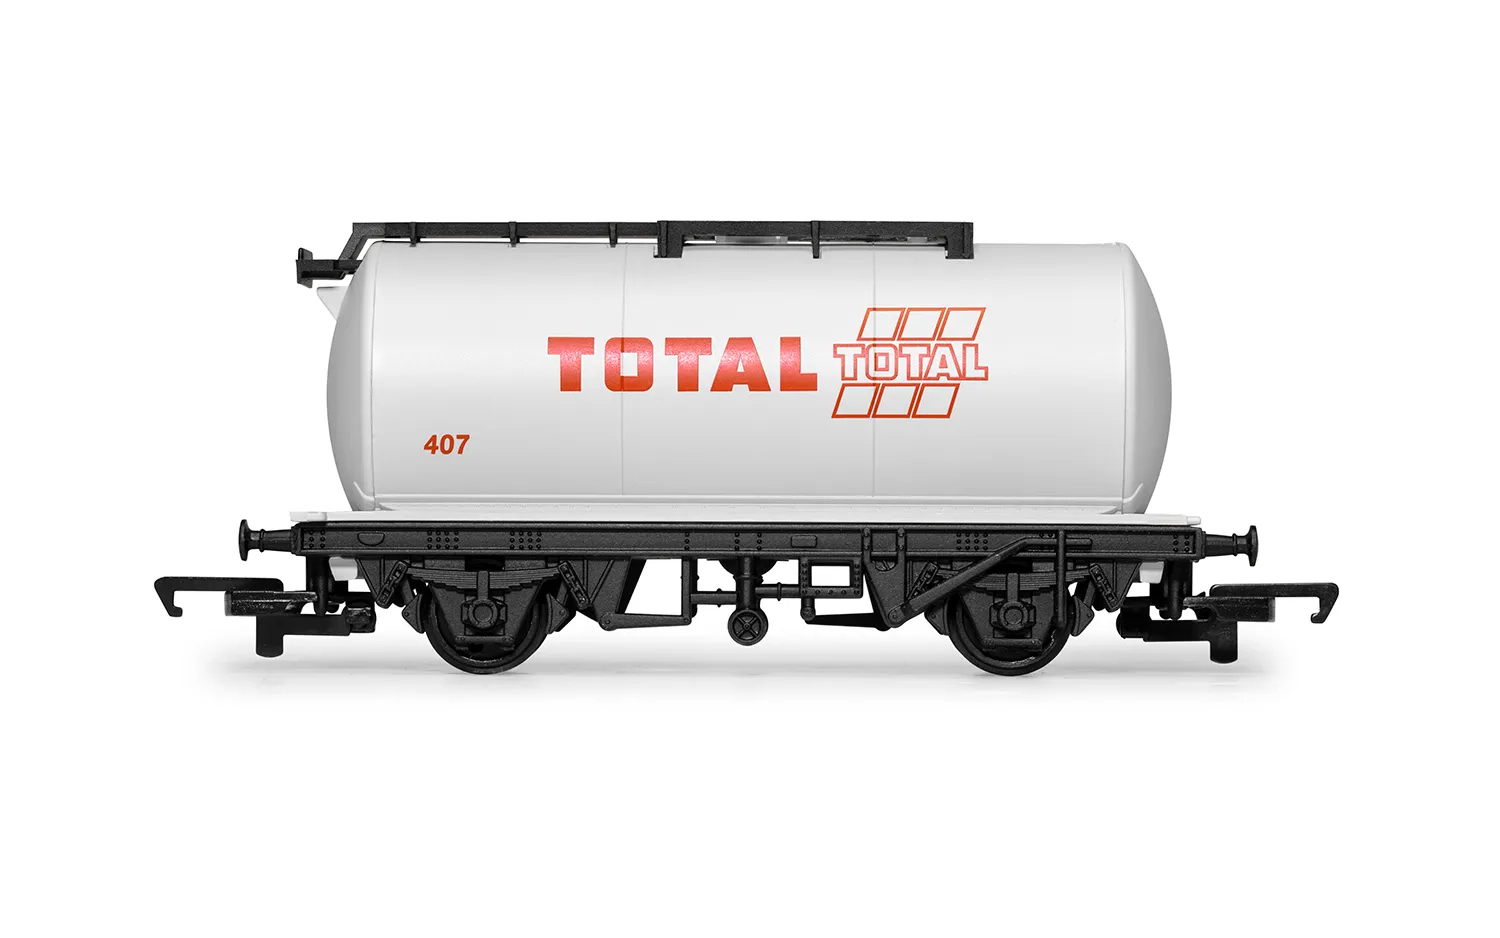 RailRoad Petrol Tankers, three pack, Various-Era 2/3